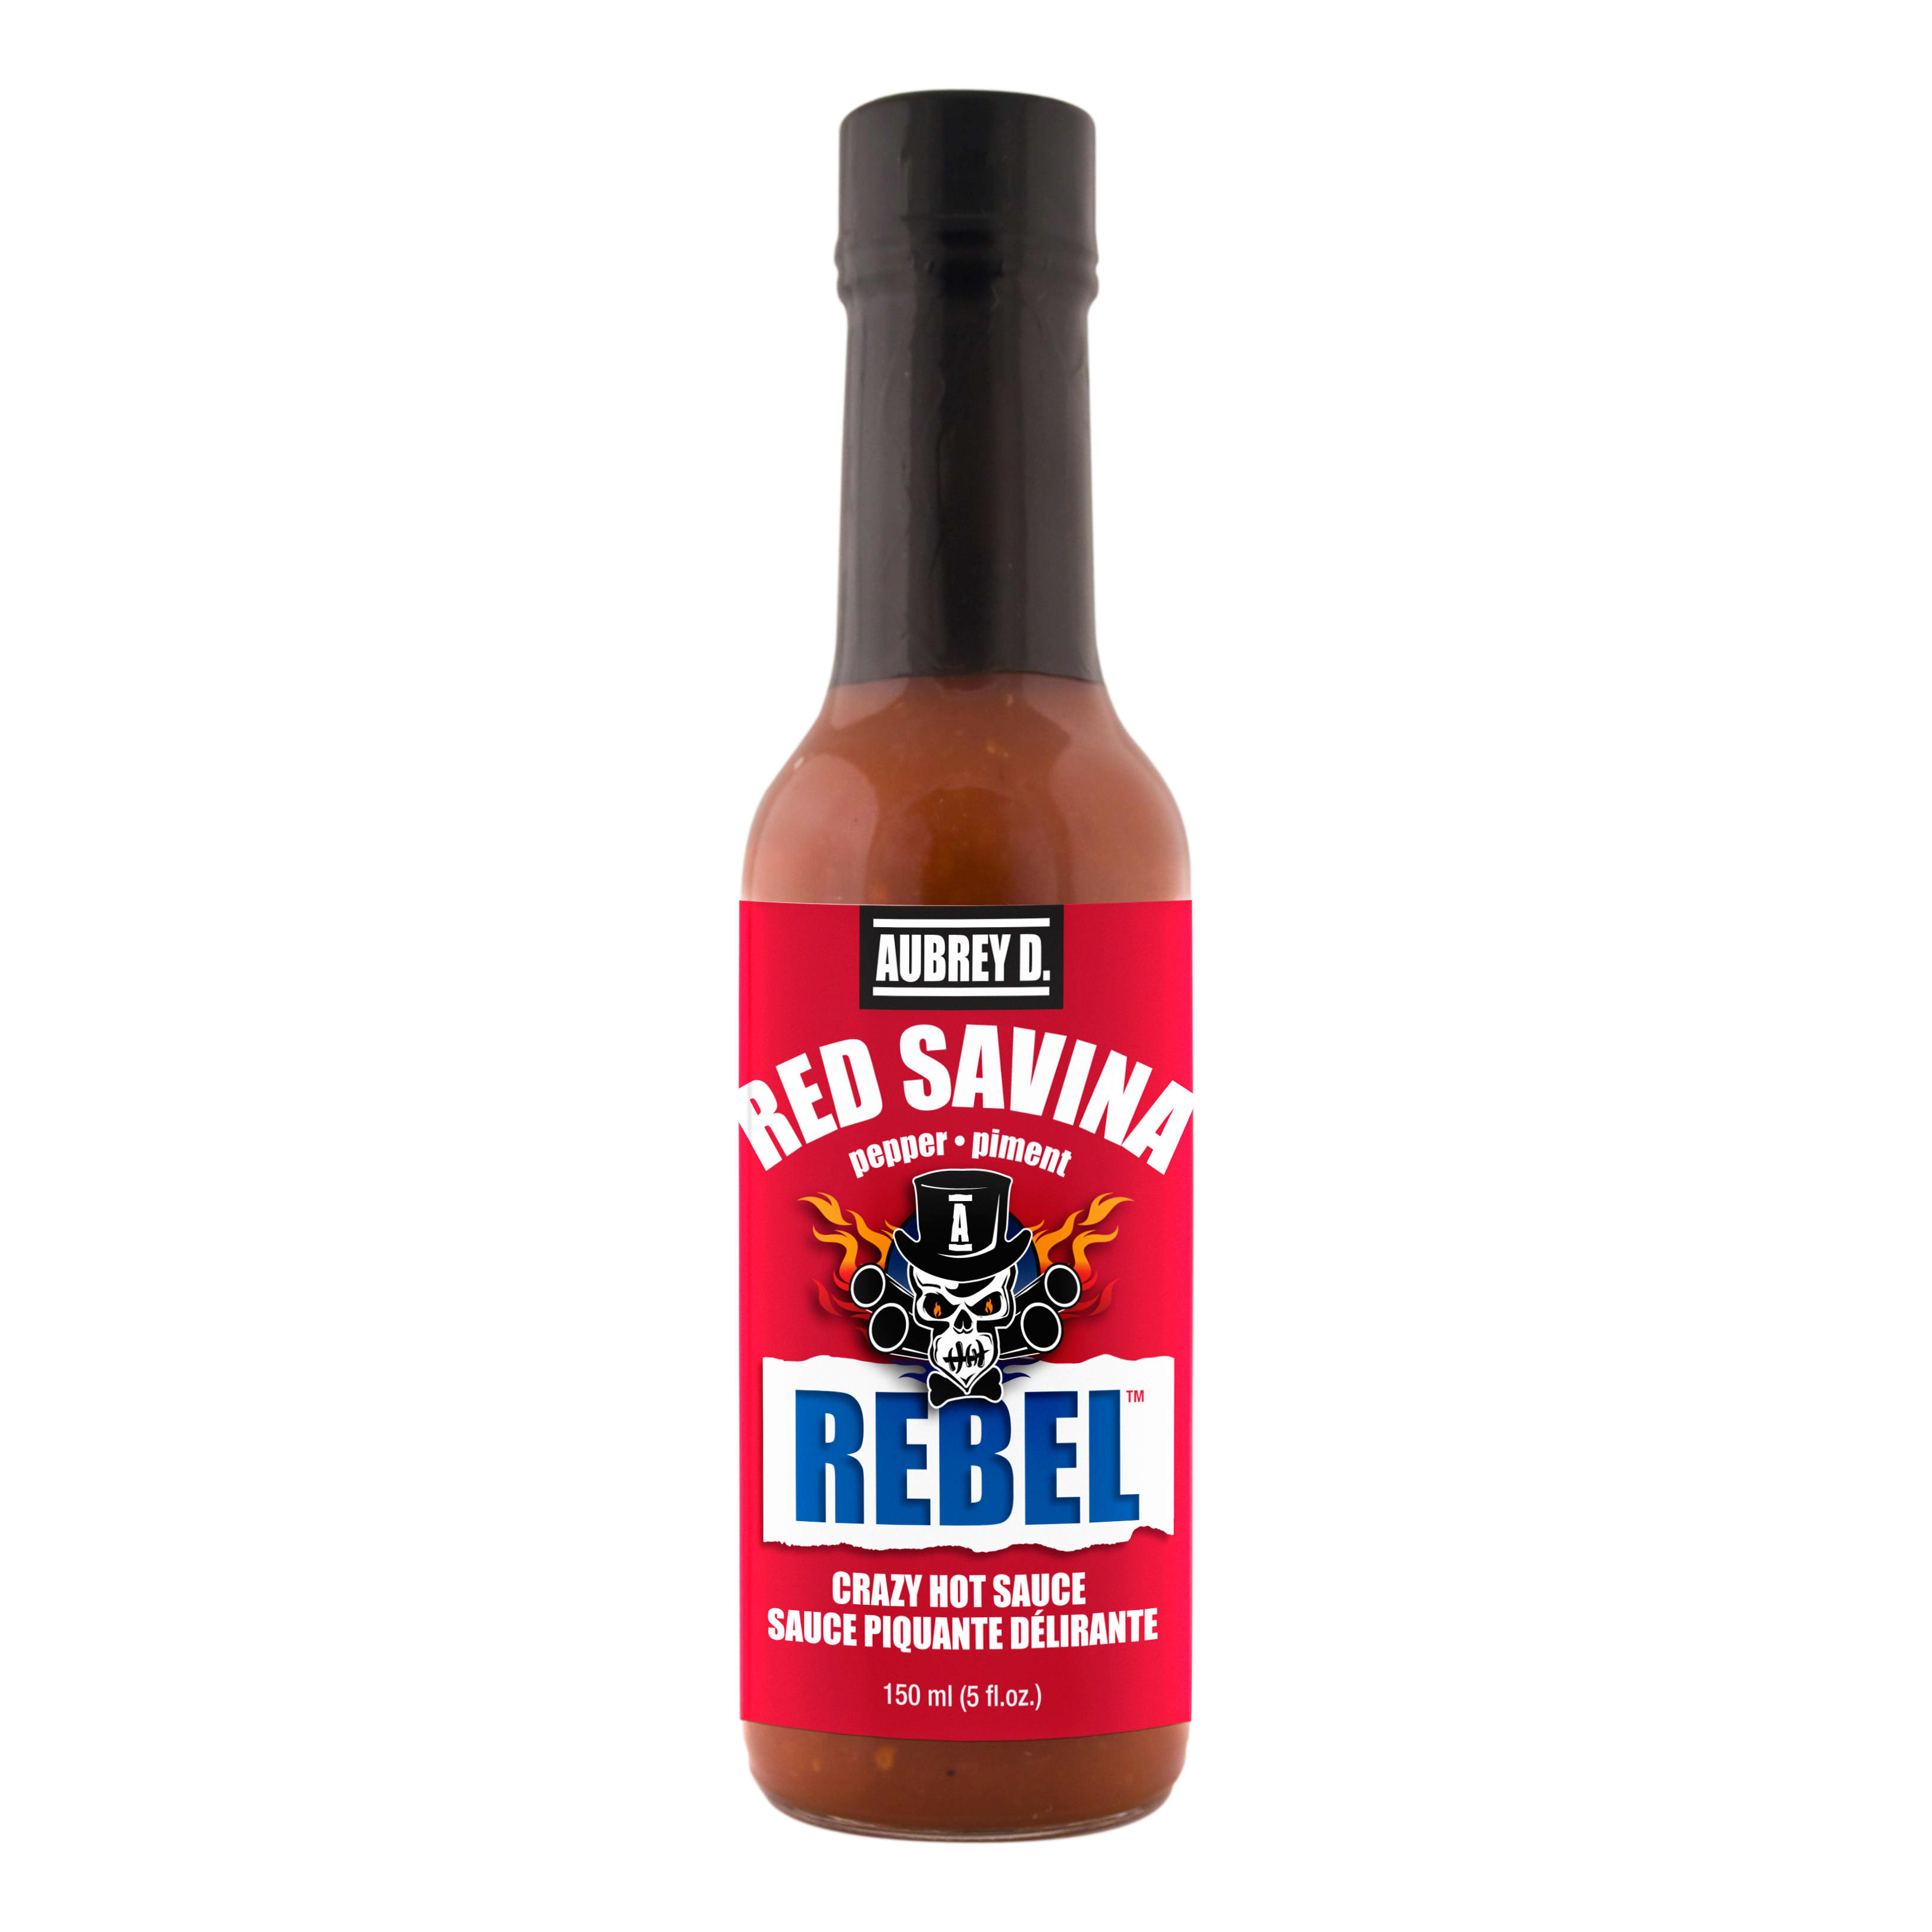 Aubrey D. Rebel Red Savina Hot Sauce